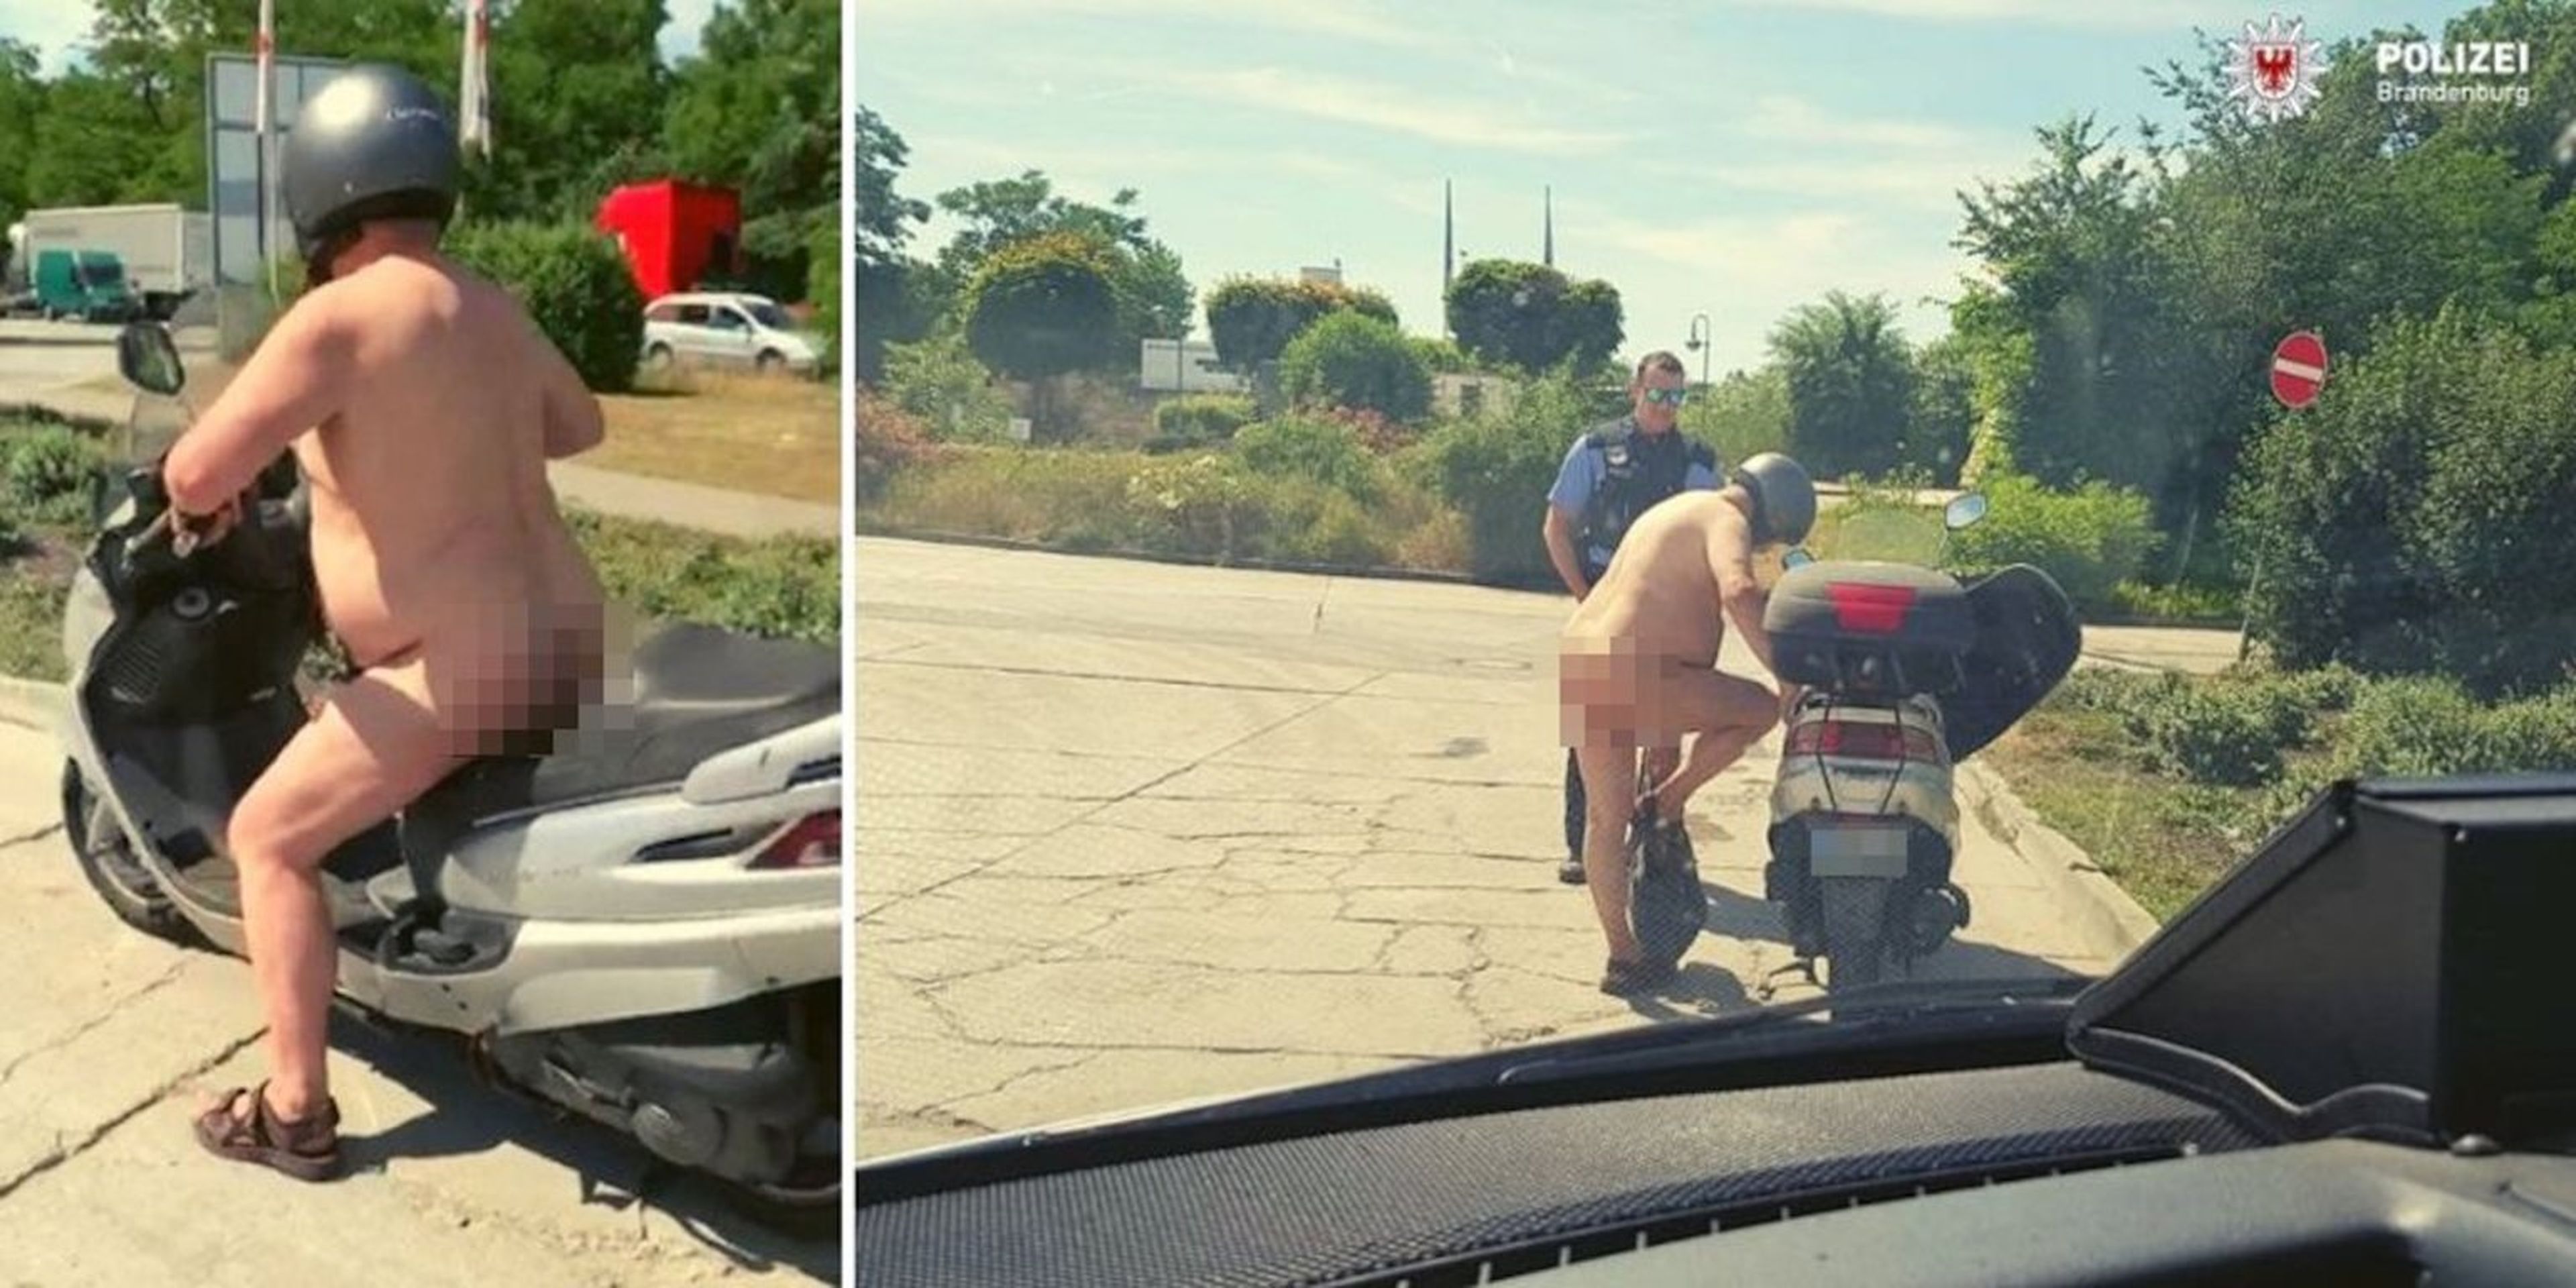 La policía de Brandenburgo compartió la imagen de un hombre desnudo en su ciclomotor